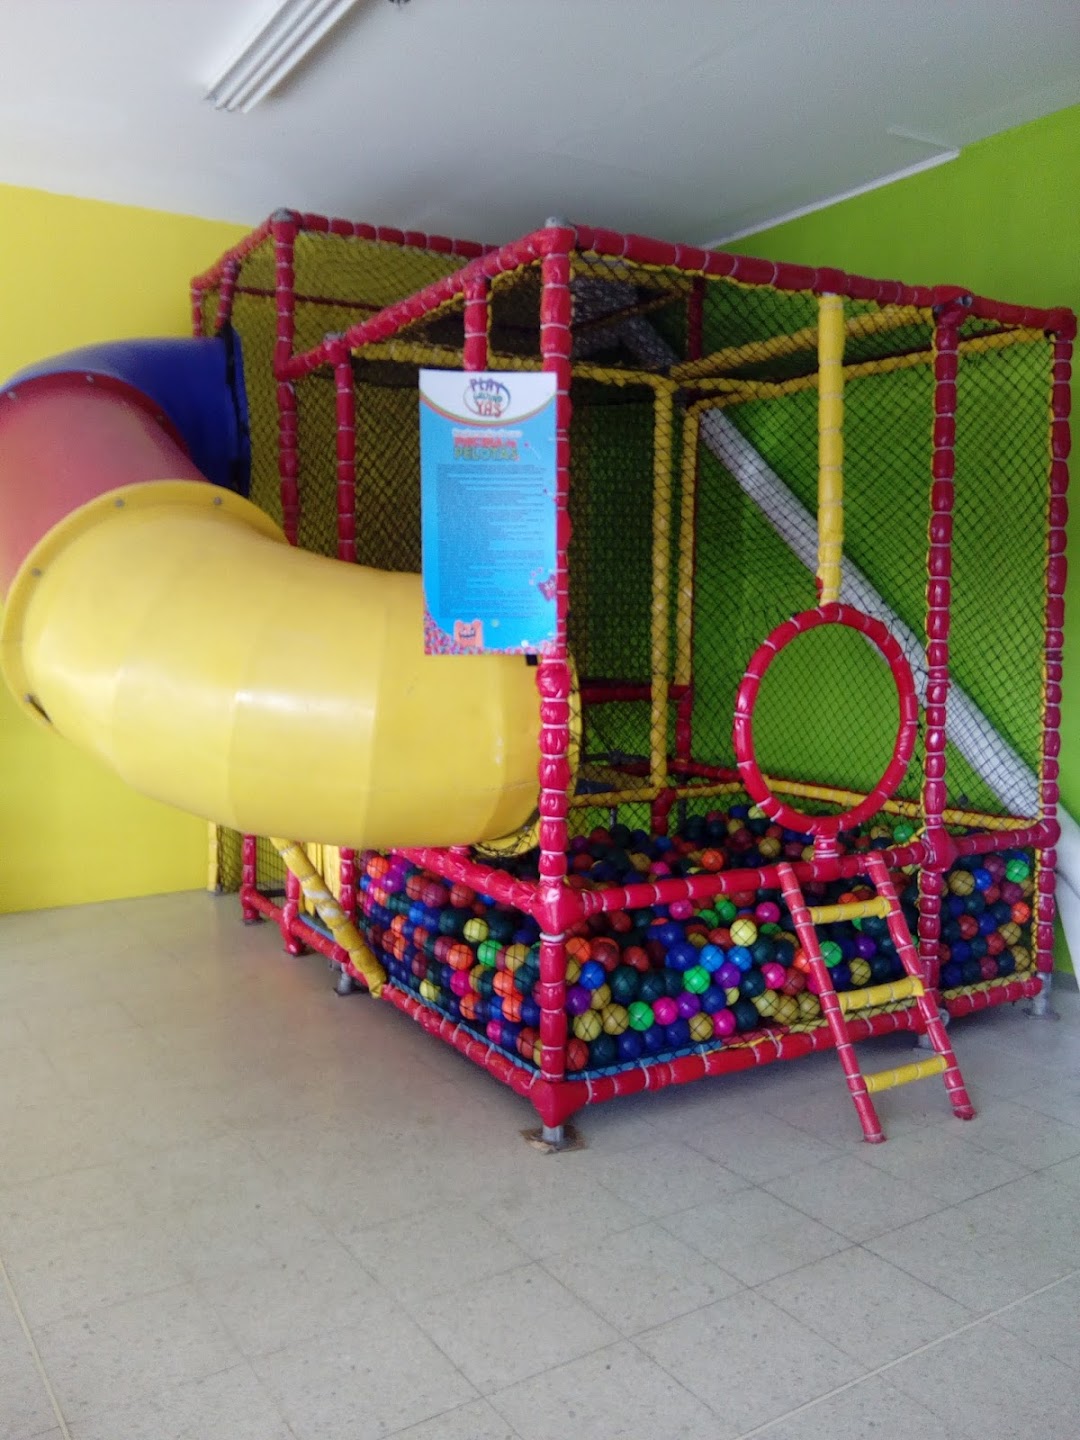 Playground Yaz Juegos infantiles